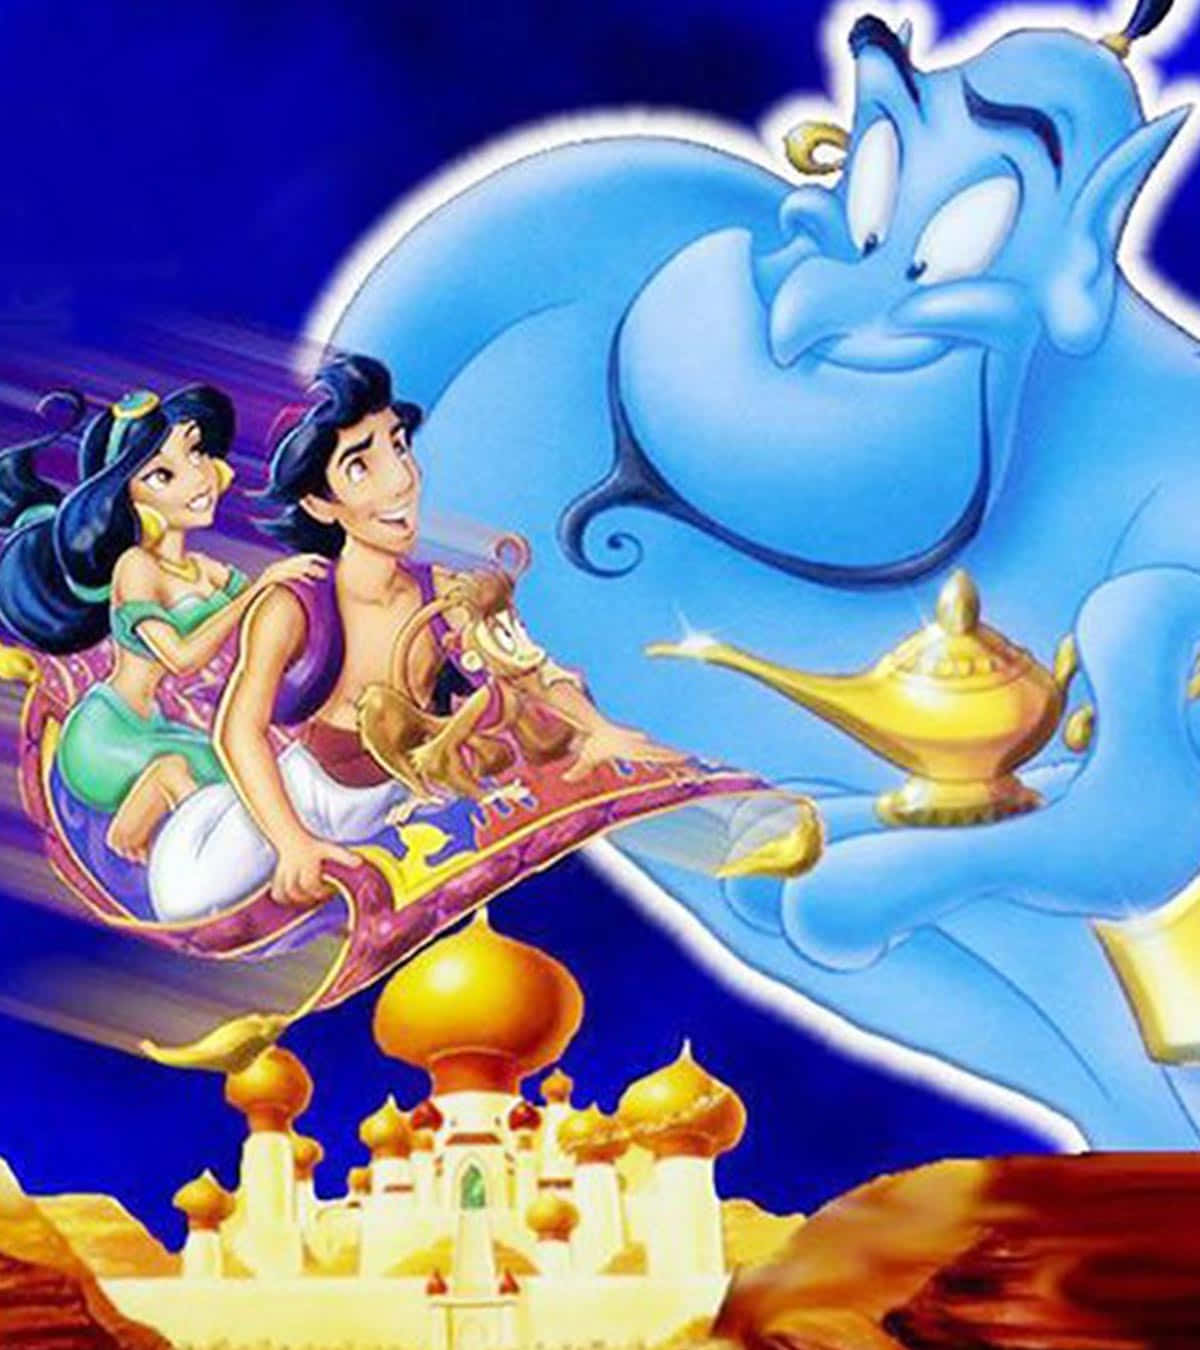 Aladdin svæver over Agrabah på hans magiske tæppe